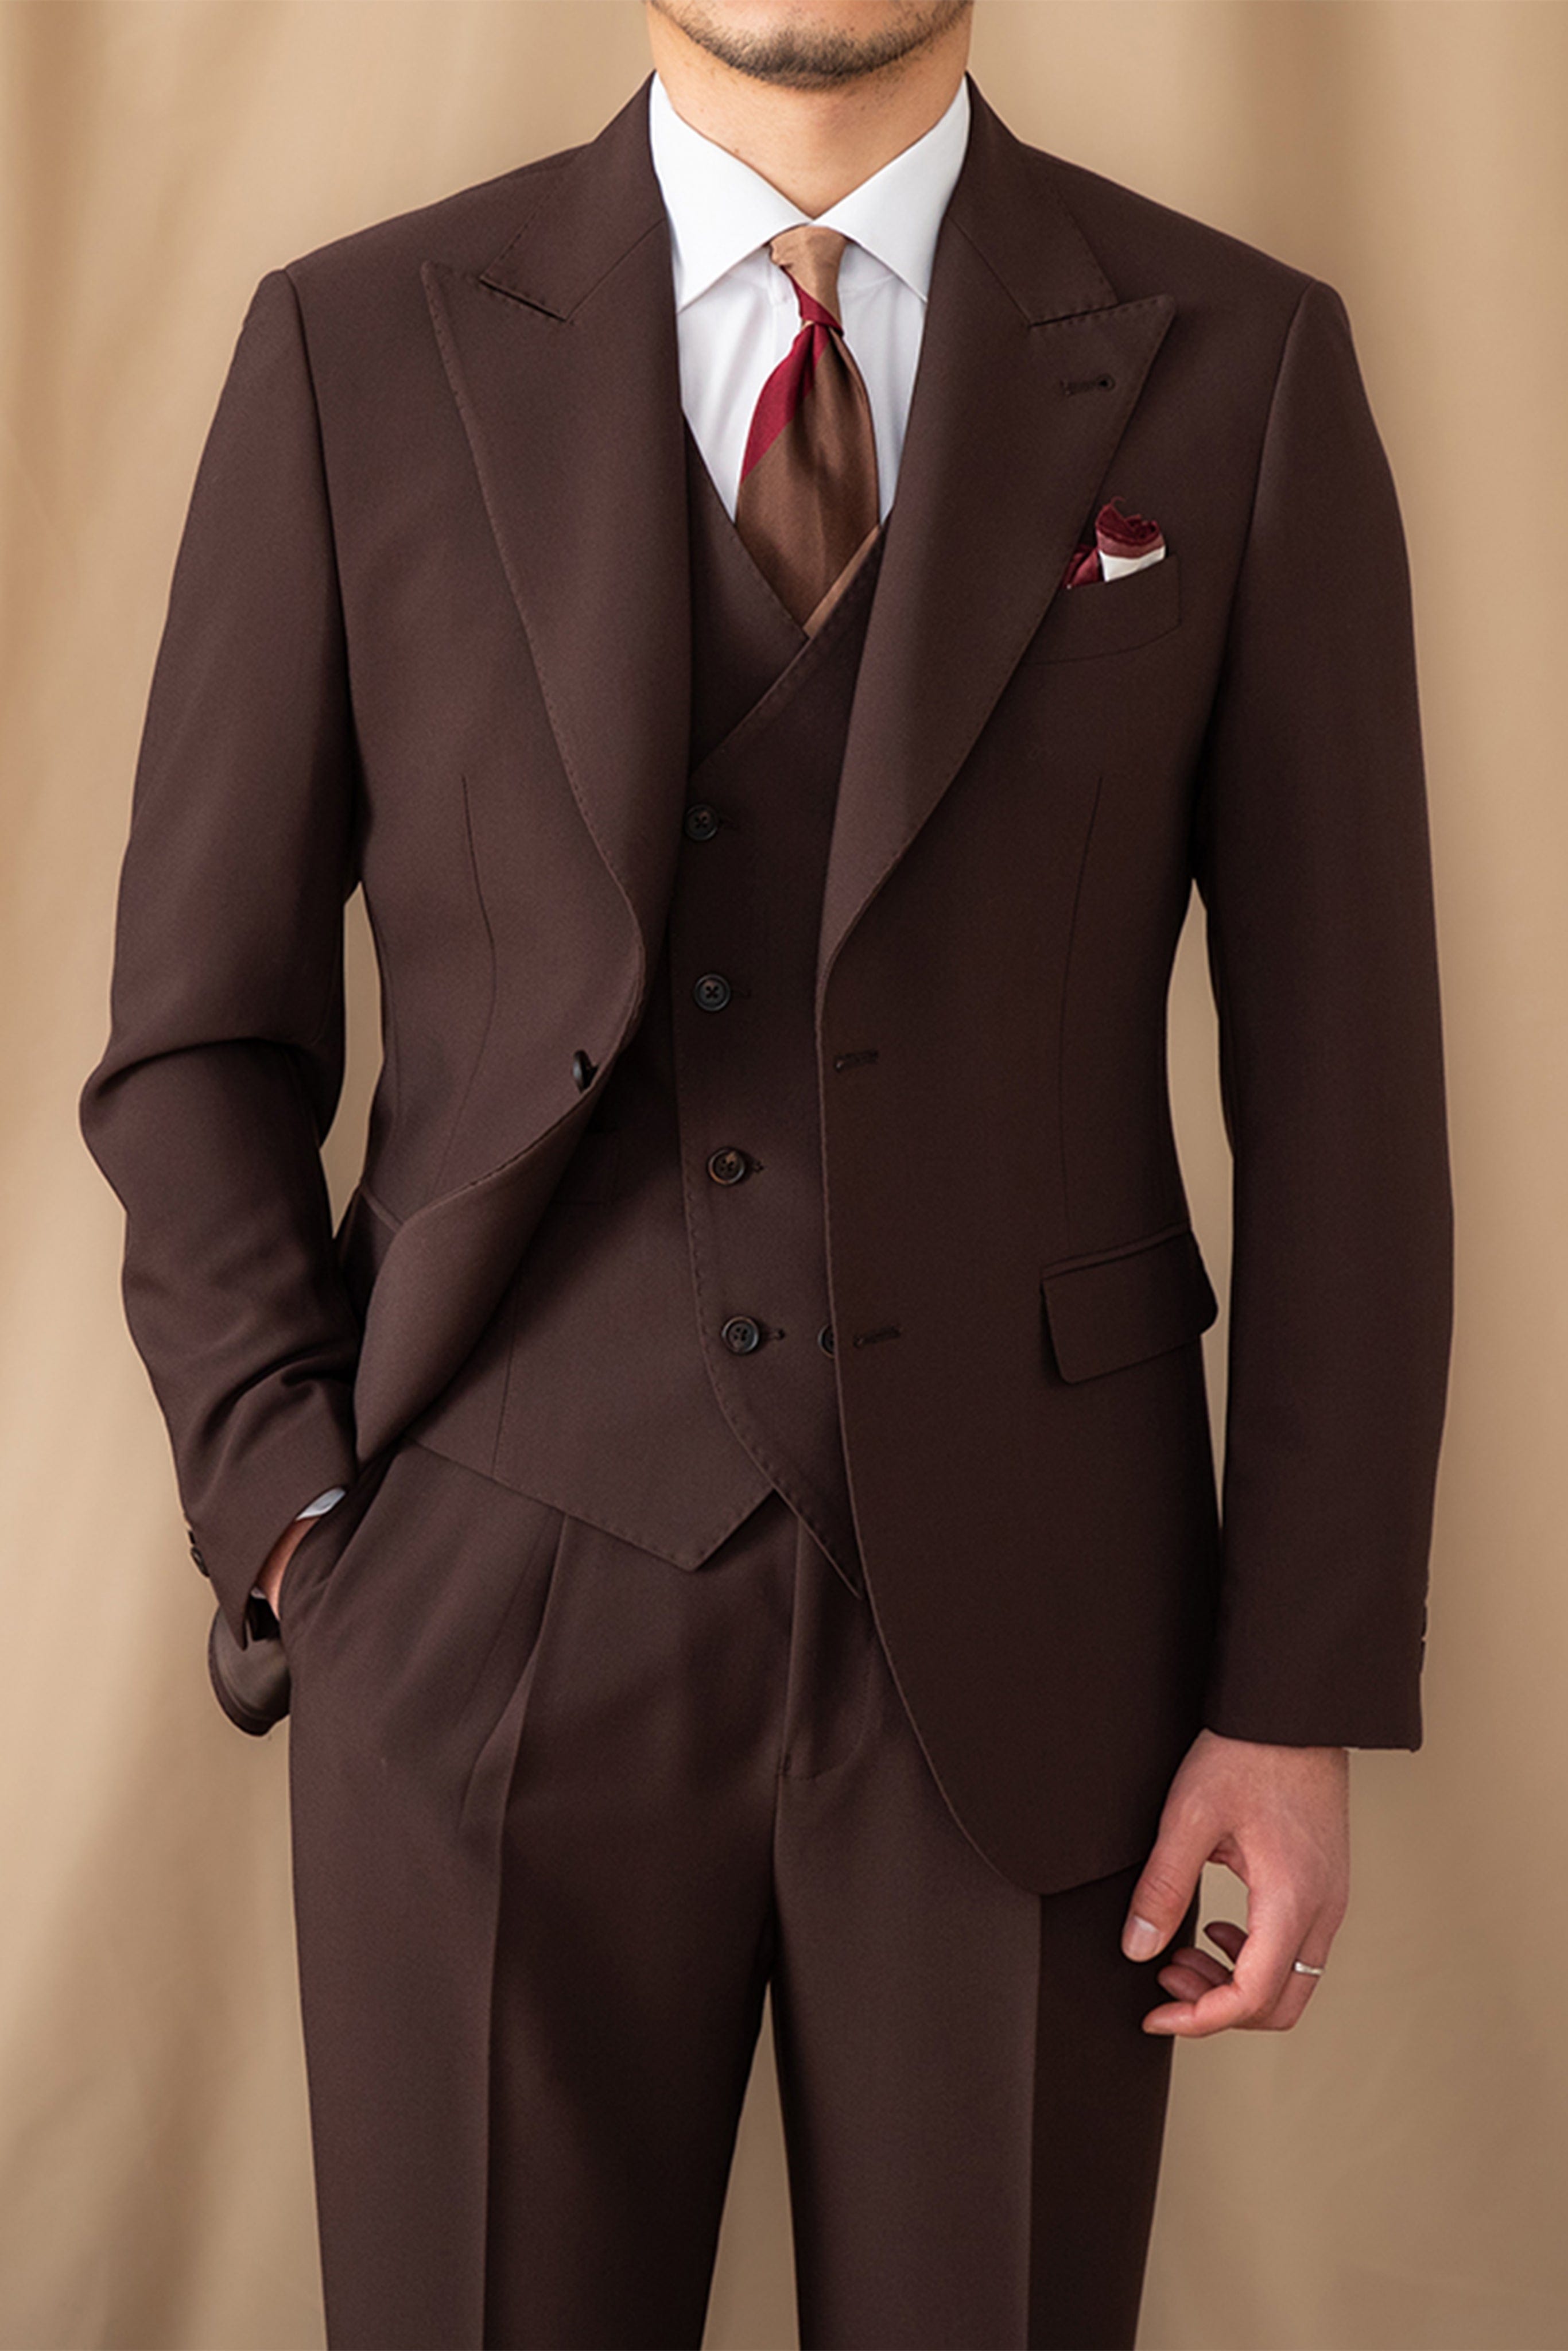 aesido Men's Suit 3 Piece Coffee Business Casual Peak Lapel Jacket (Blazer+Vest+Pants)